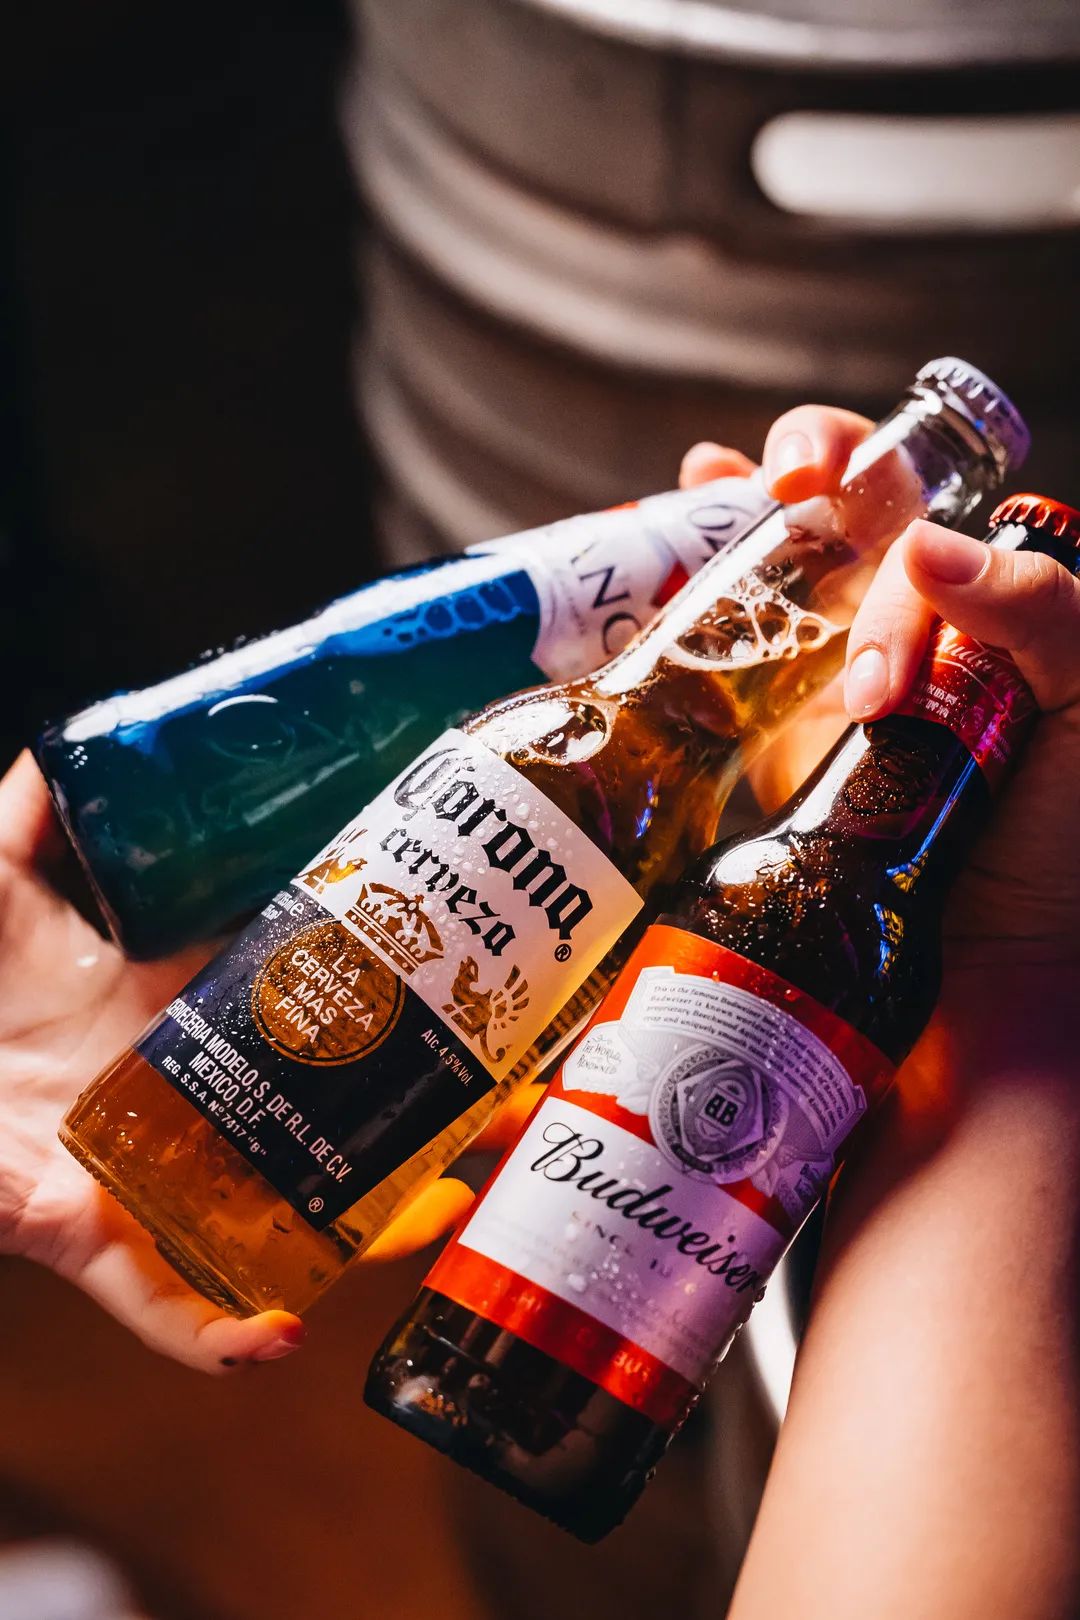 青岛国际啤酒节开启“畅饮”模式-国际在线